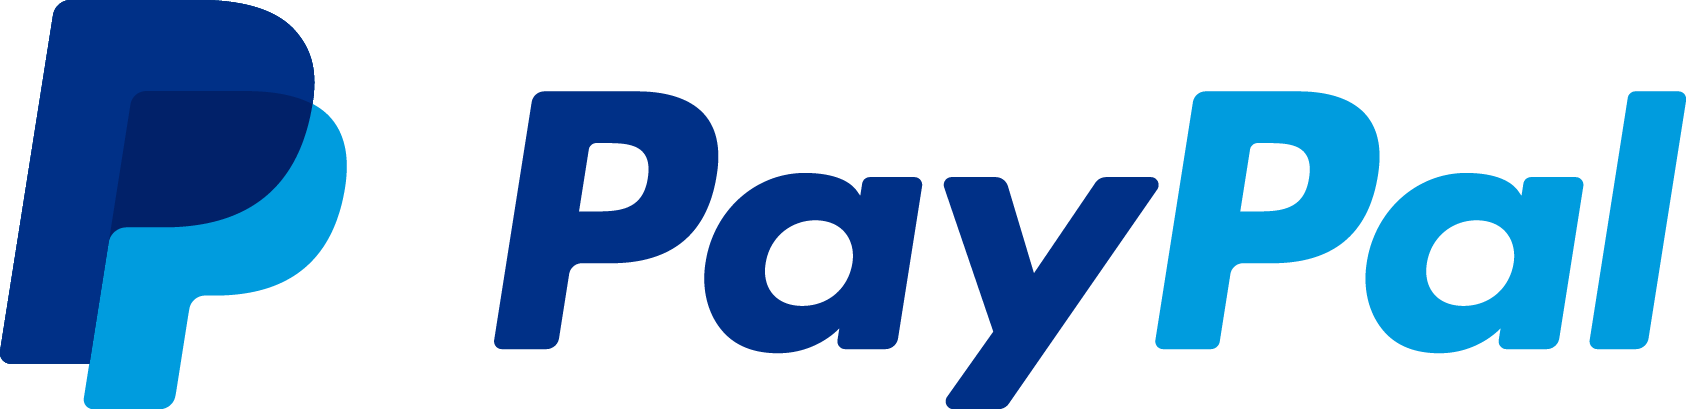 PayPal_logo.png